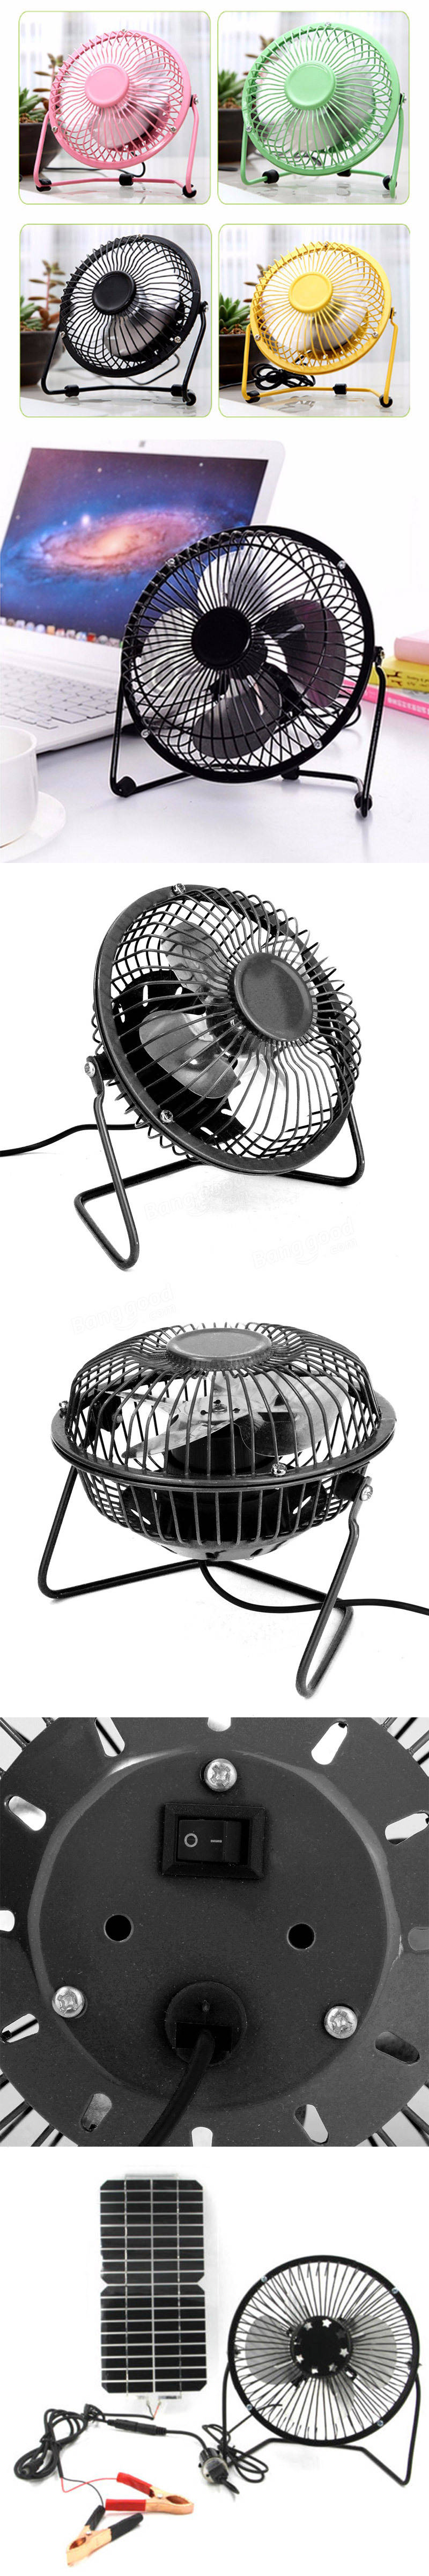 4 นิ้ว 360 องศาปรับโลหะสีดำมินิ USB ฤดูร้อน Cool Cooling Fan สีเลือกใช้สำหรับเดสก์ท็อป